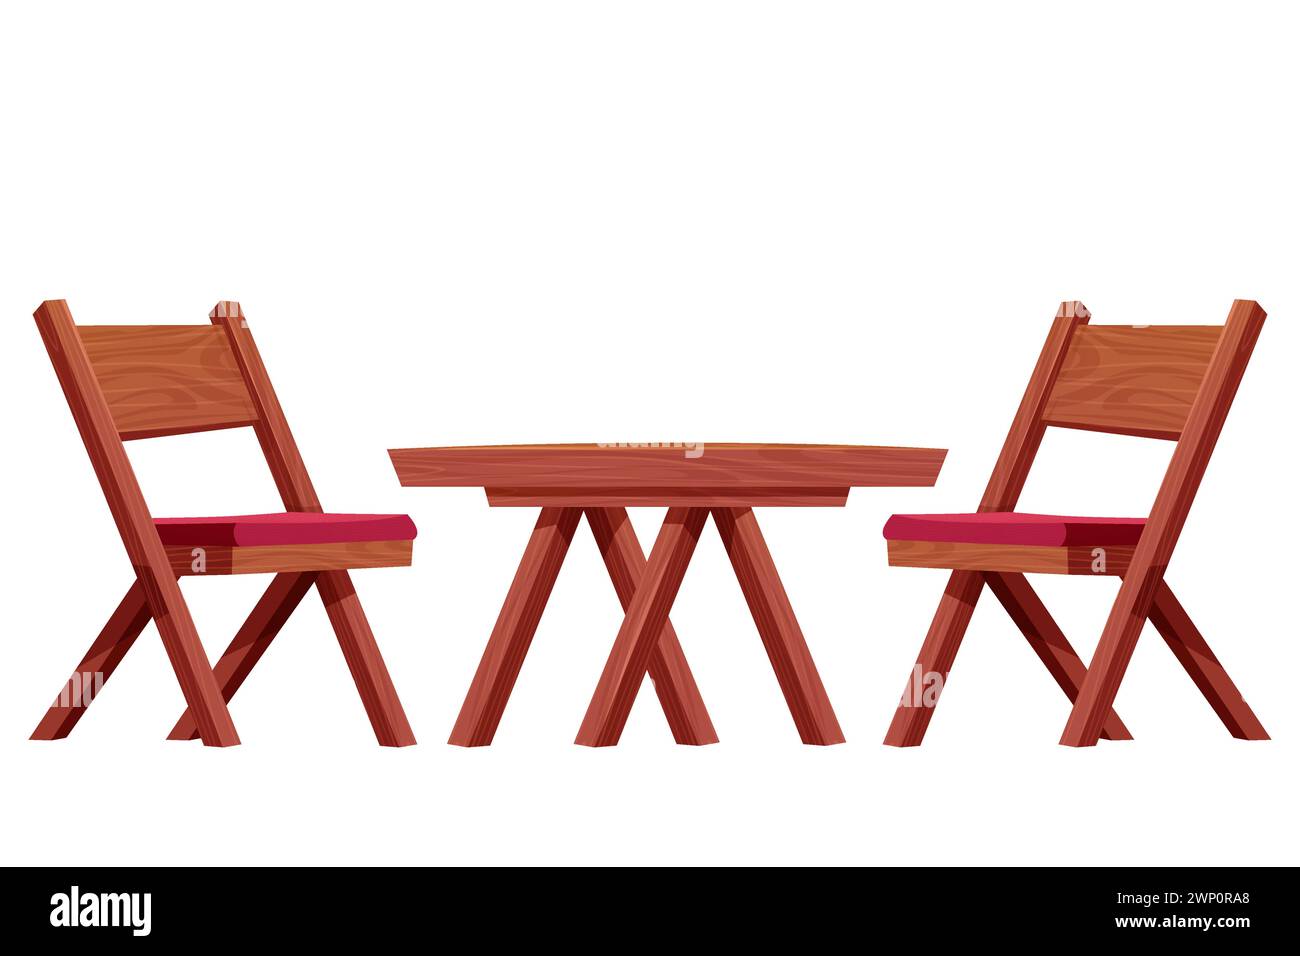 Table de pique-nique avec chaise ensemble de meubles en bois, bureau en bois avec construction rustique de jambe dans le style de bande dessinée isolé sur fond blanc. Table basse texturée en bois comique. Illustration vectorielle Illustration de Vecteur